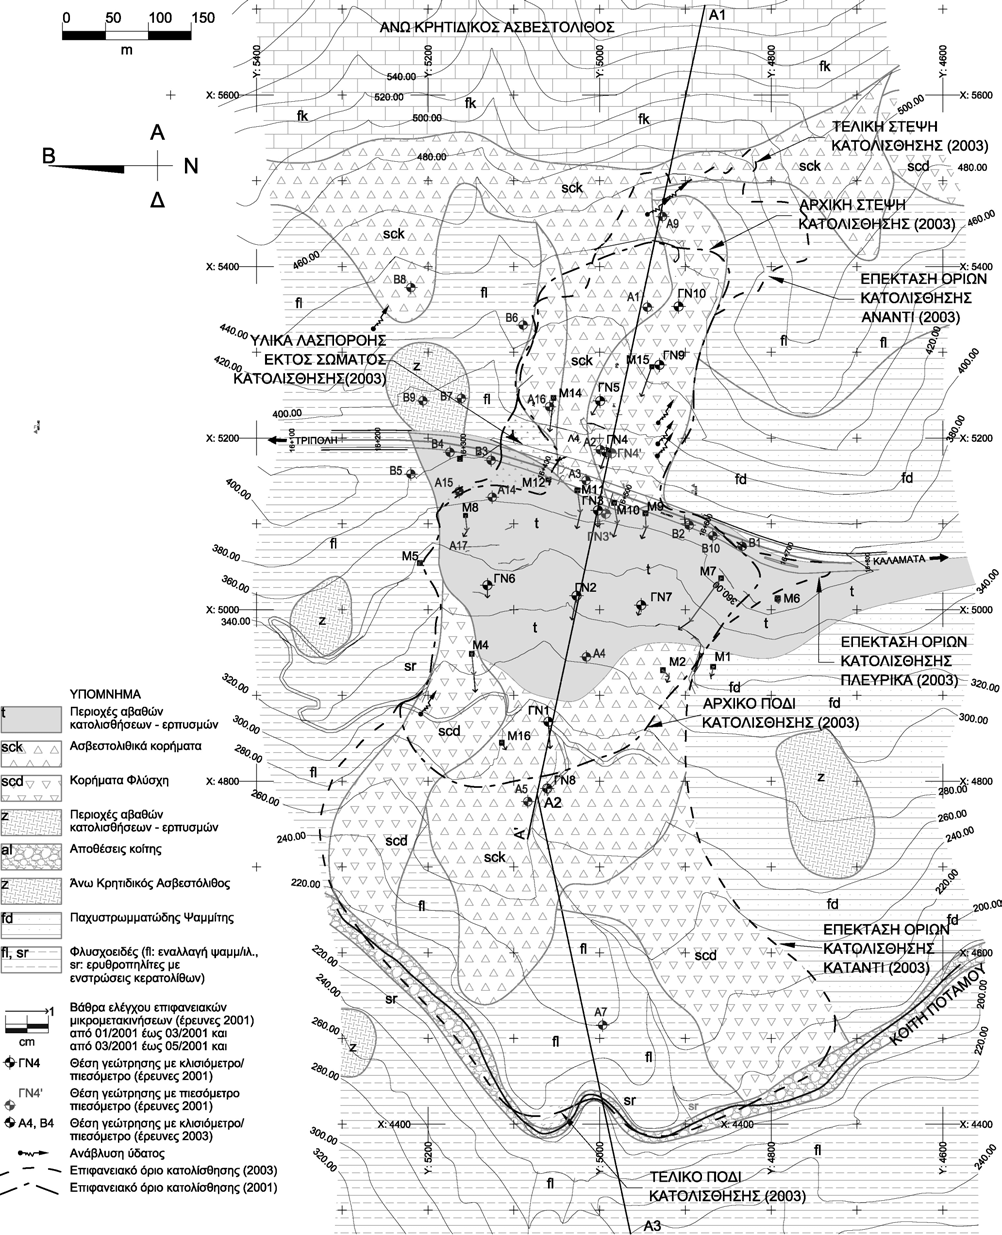 Σχήµα 1. Οριζοντιογραφία περιοχής κατολίσθησης πριν τη µεγάλη µετακίνηση Όρια κατολίσθησης πριν και µετά τη µεγάλη µετακίνηση (βασισµένο στους Σωτηρόπουλος κ.α., 2004). Figure 1.